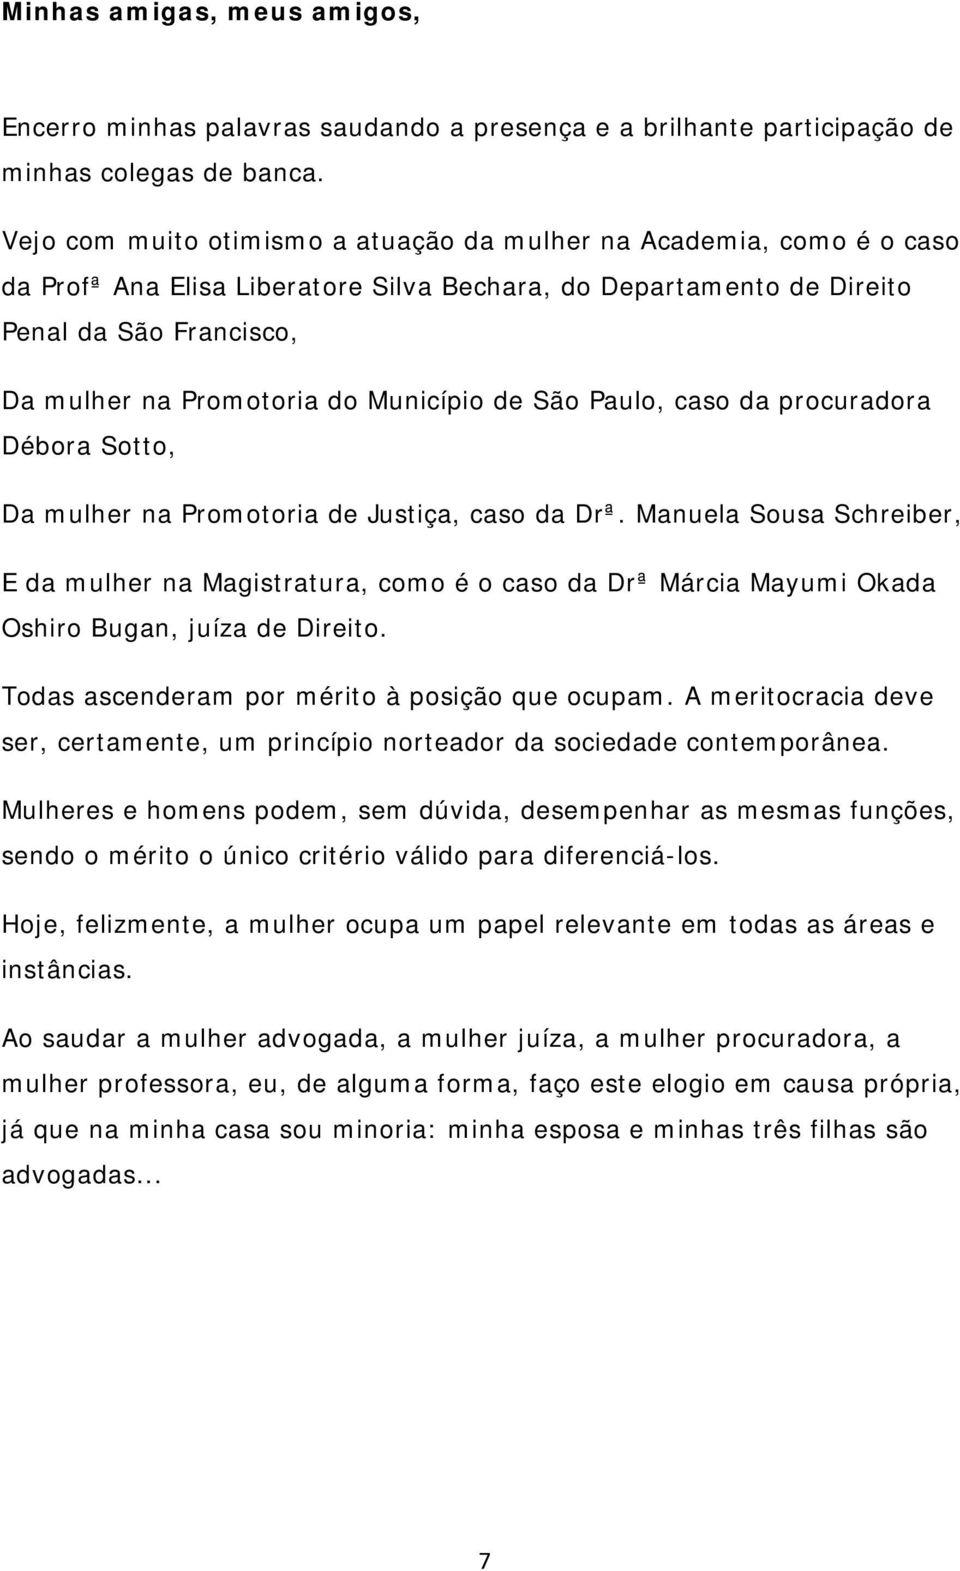 Município de São Paulo, caso da procuradora Débora Sotto, Da mulher na Promotoria de Justiça, caso da Drª.